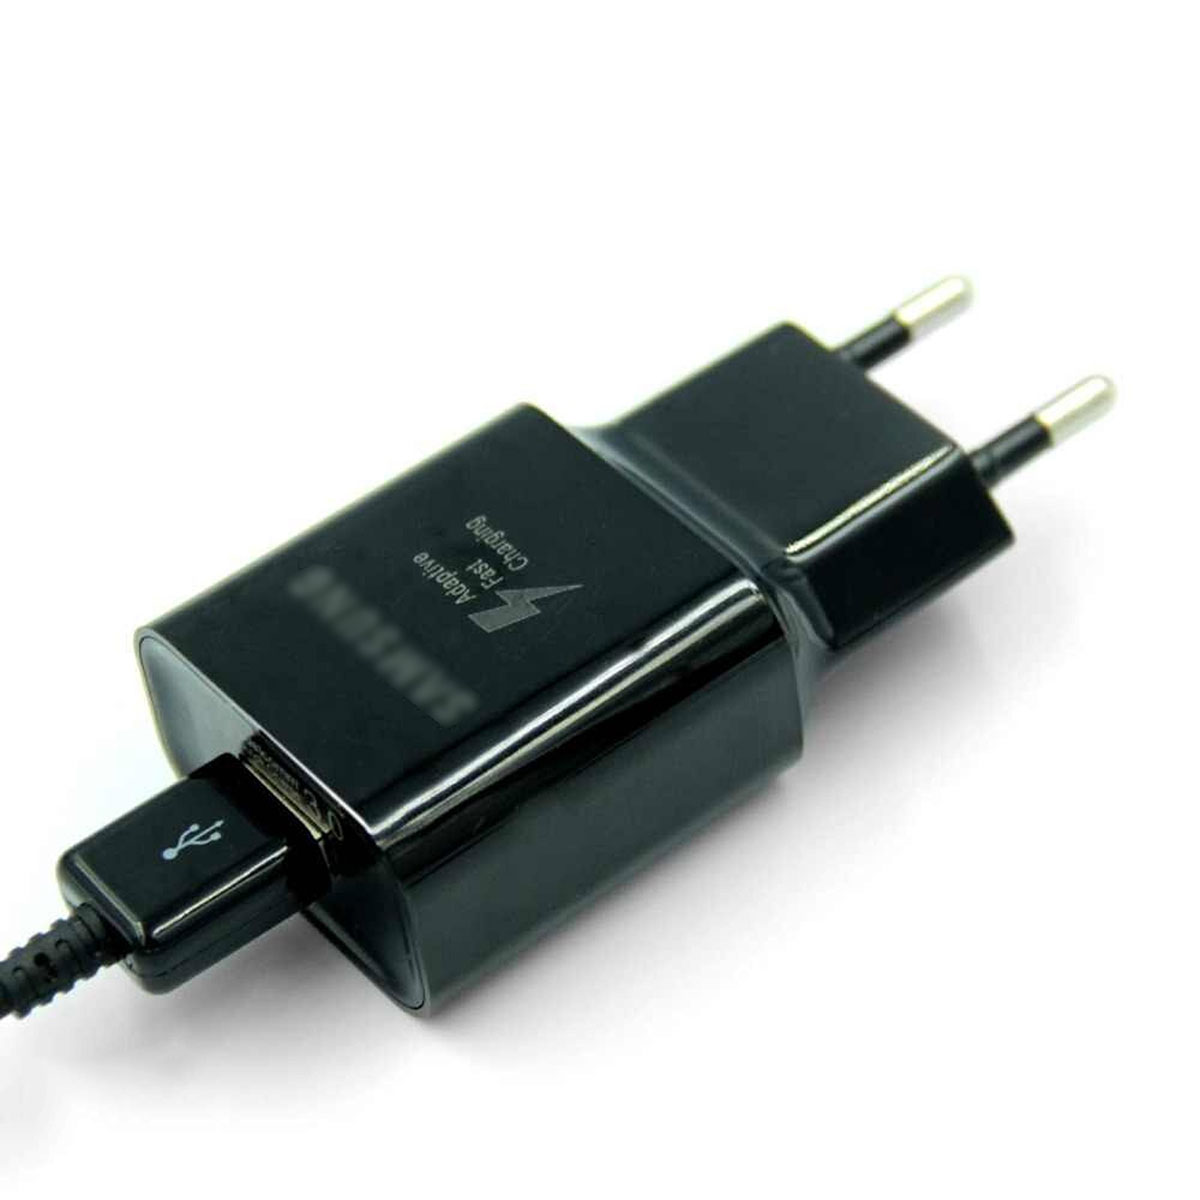 СЗУ (сетевое зарядное устройство) адаптер, вилочка EP-TA20EWE S7, 5V-2A, 1xUSB, цвет черный